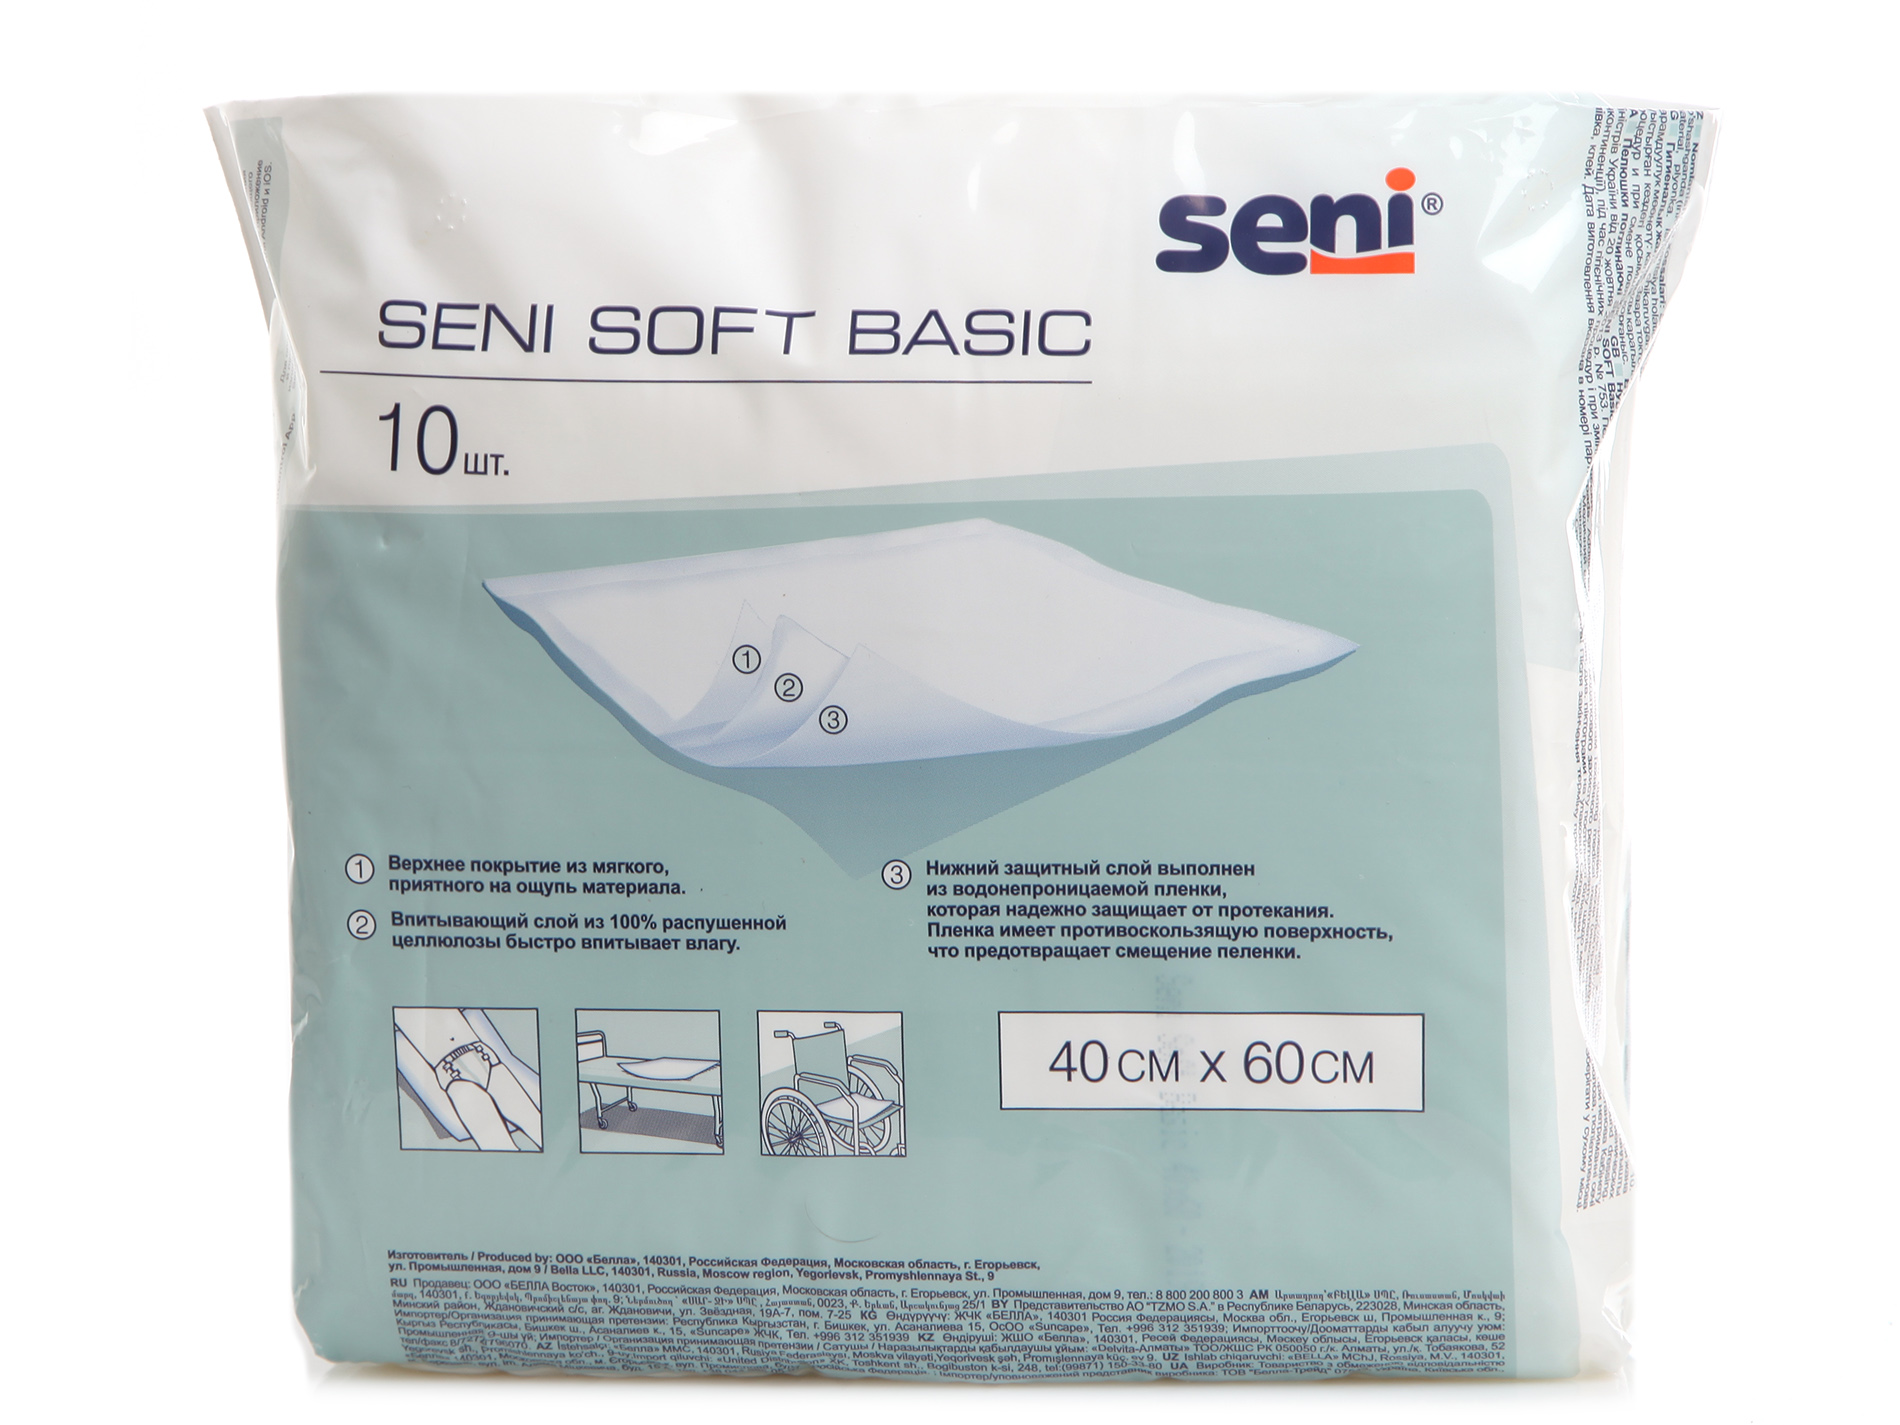 Пеленка одноразовая впитывающая для лежачих больных. Пеленки Seni Basic Soft 90x60 см. Seni Soft Basic 40 x 60. Сени софт Бейсик пеленки 10 шт.